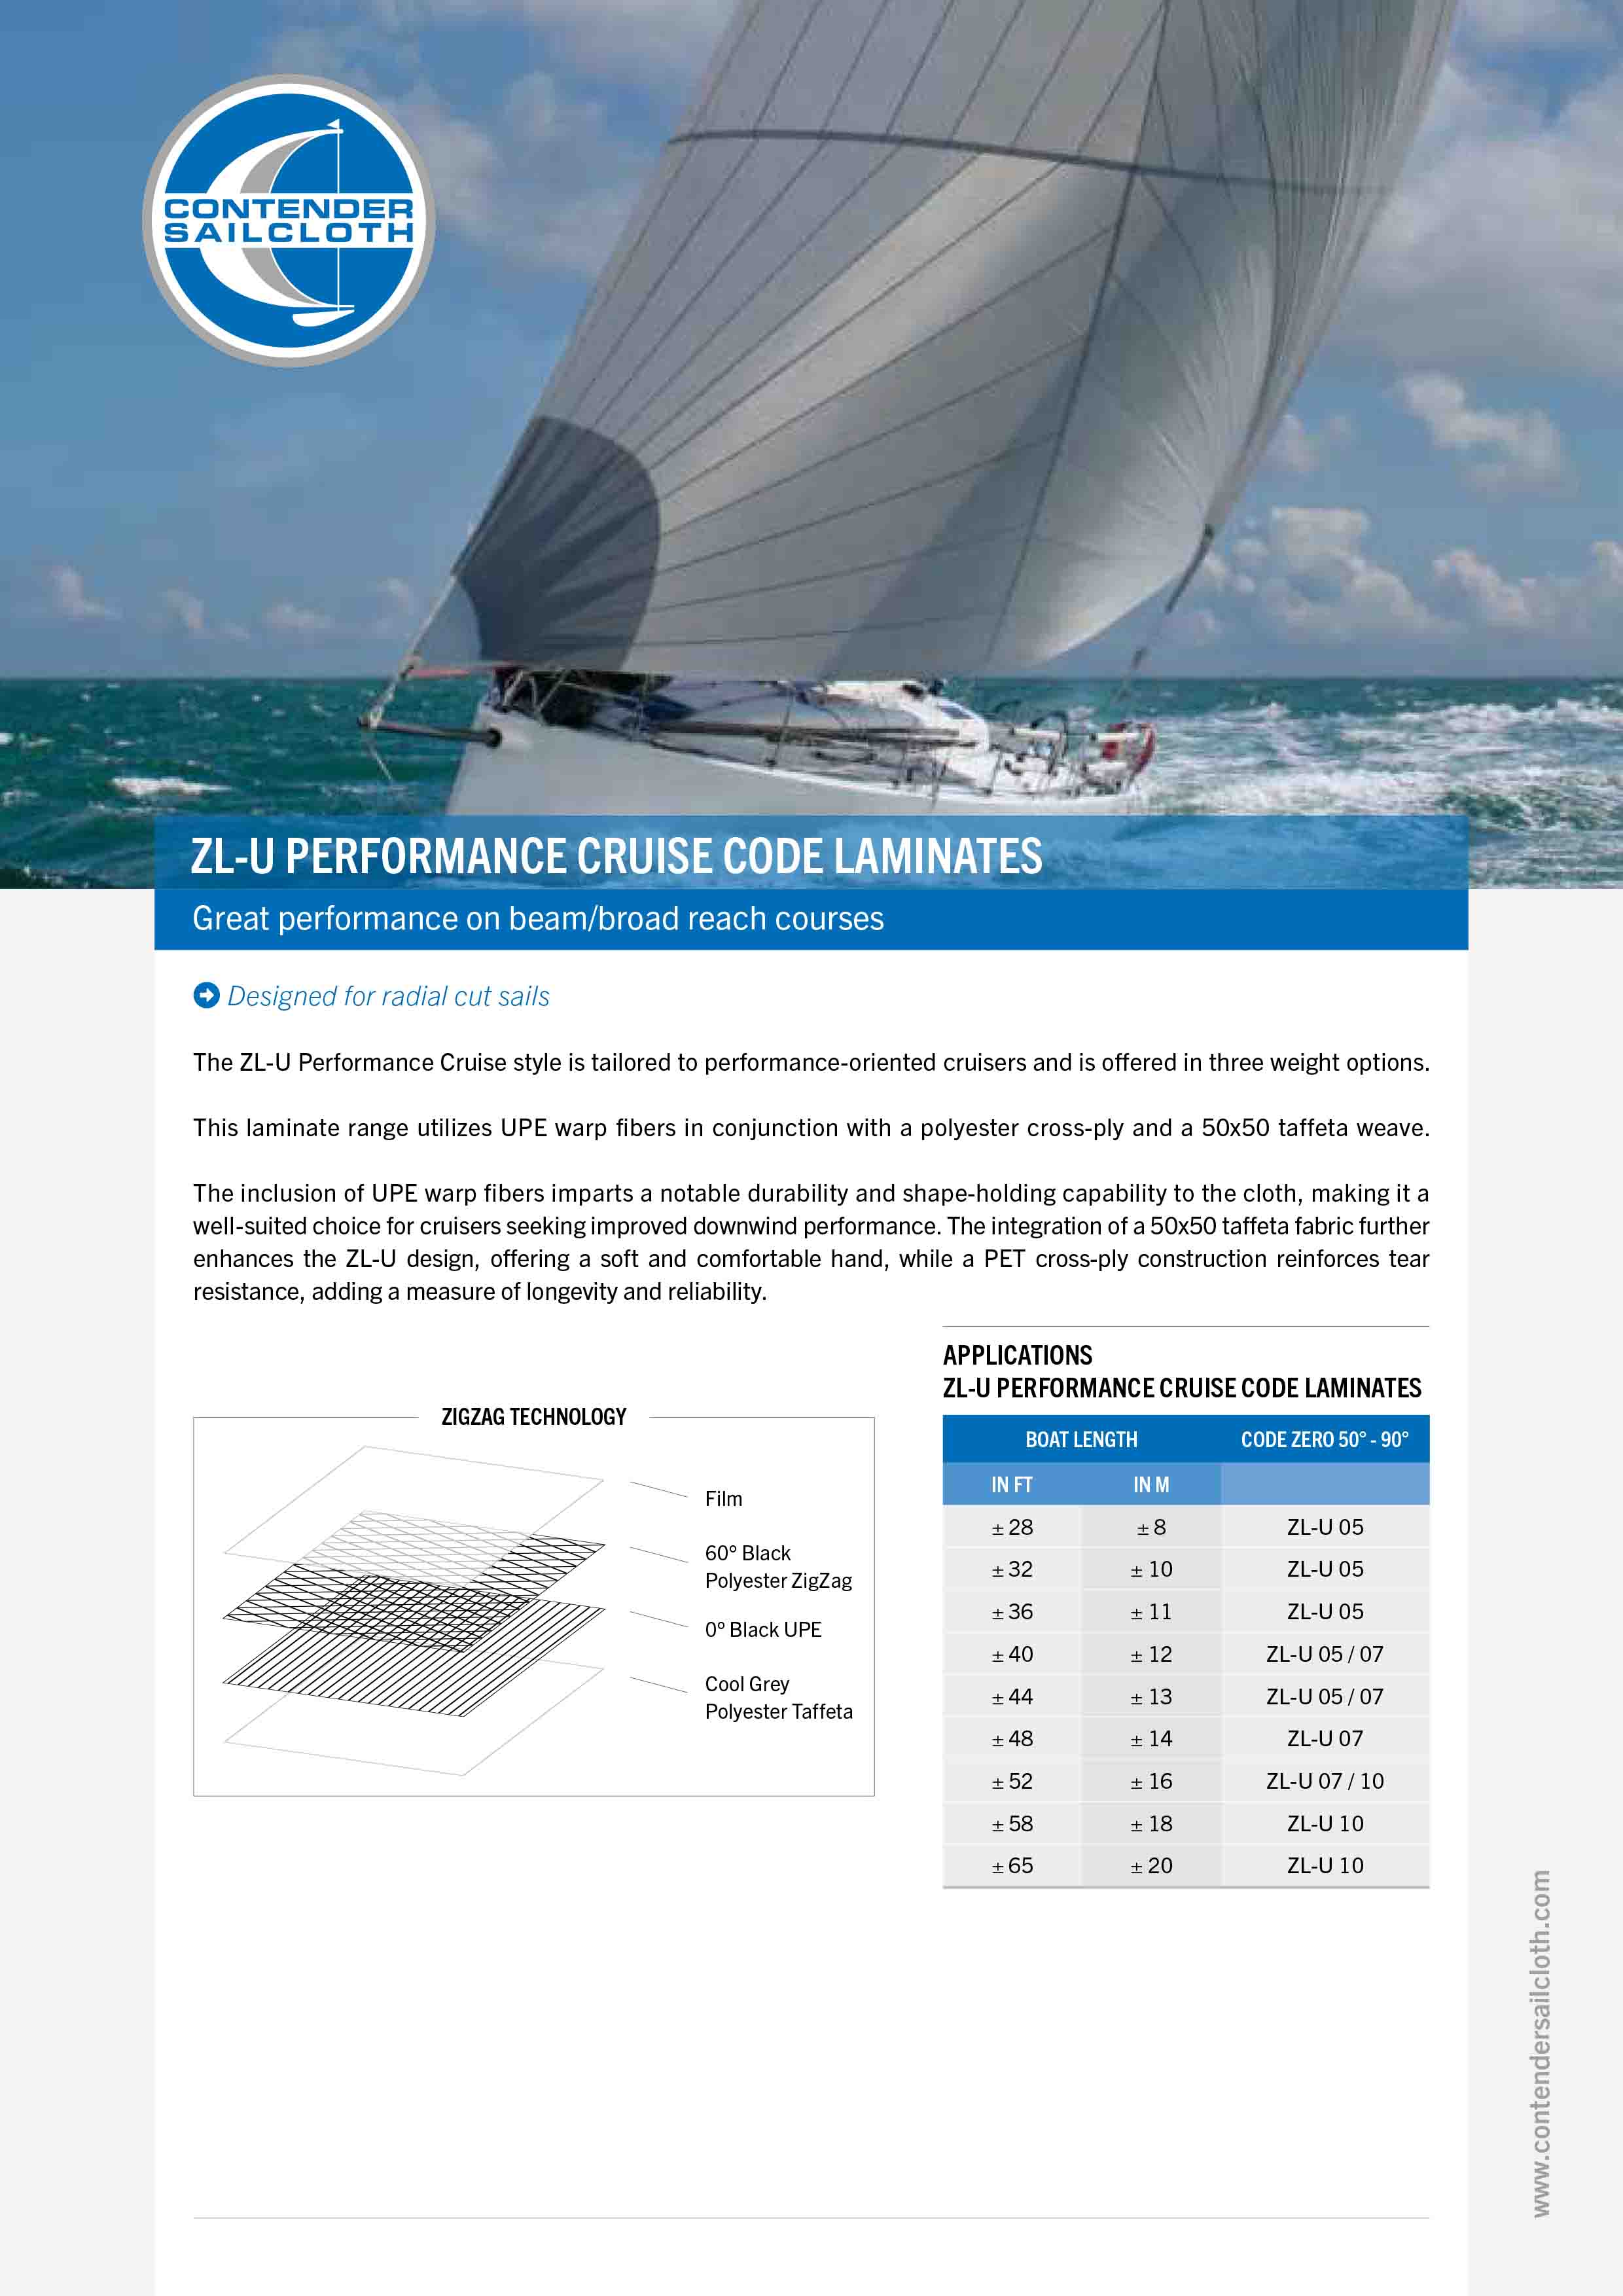 ZL-U Performance Cruise Code Laminates